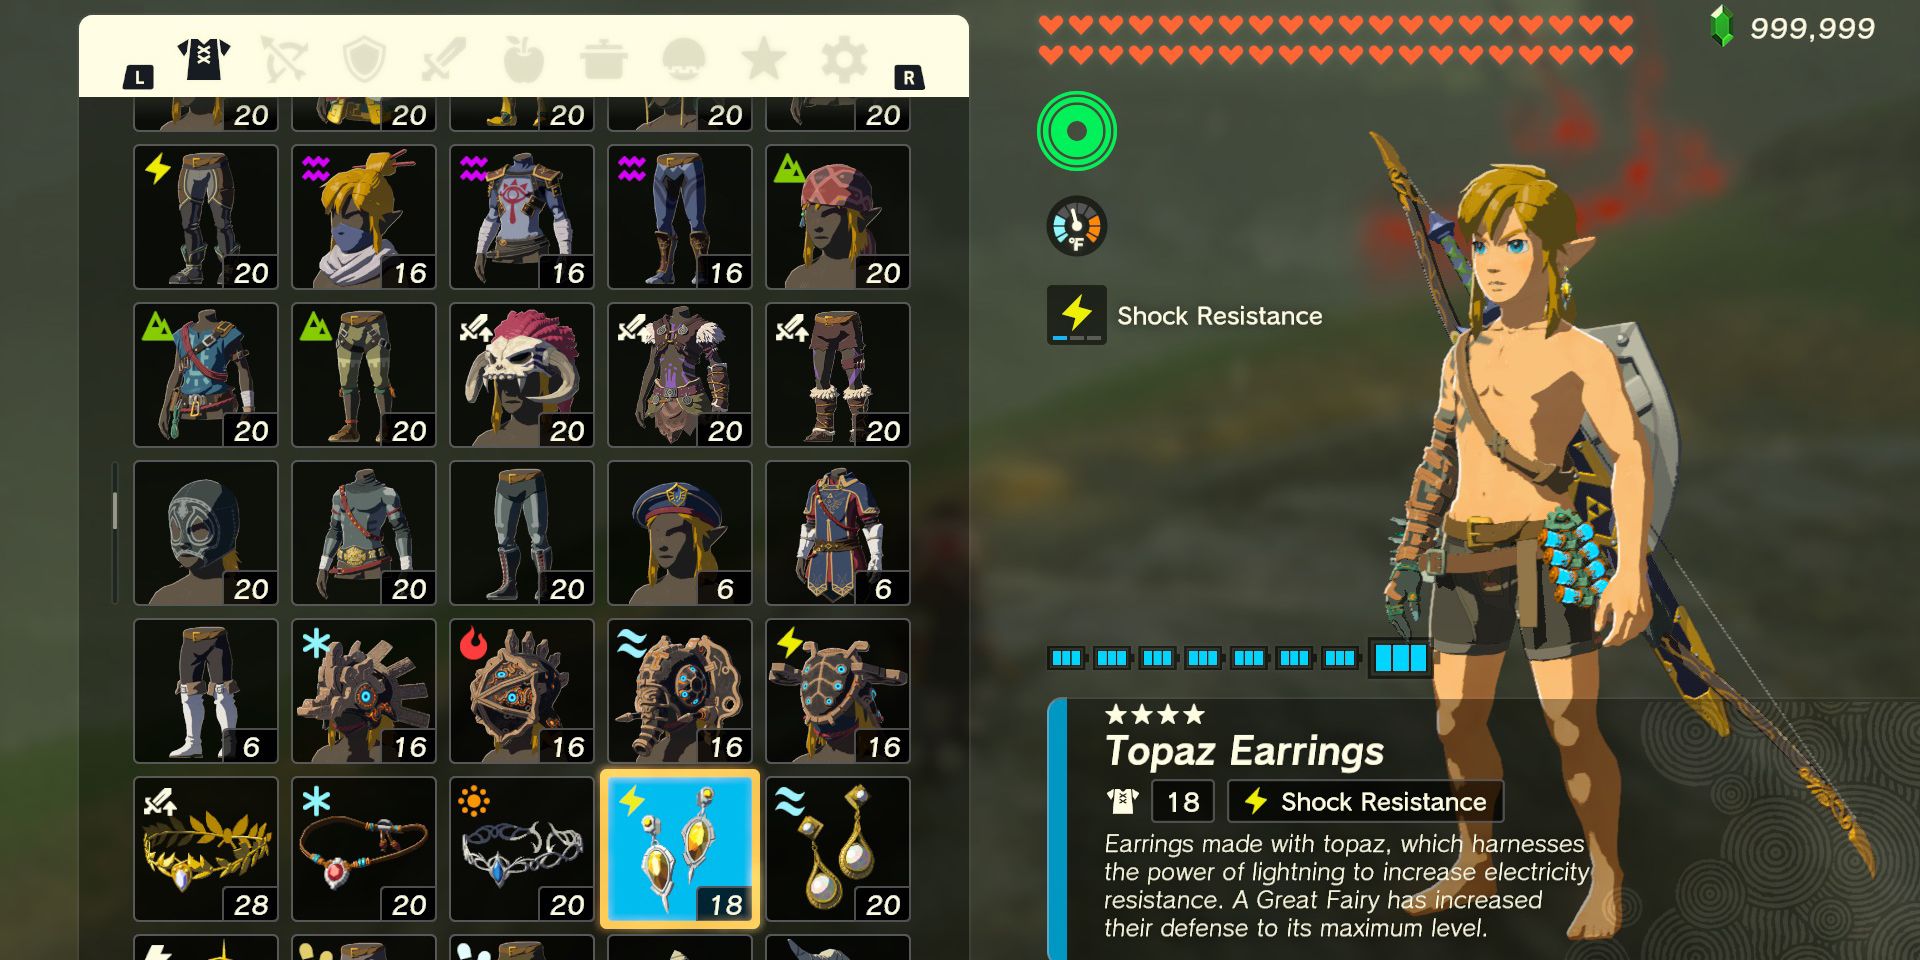 The Topaz Earrings armor piece in The Legend of Zelda: Tears of the Kingdom